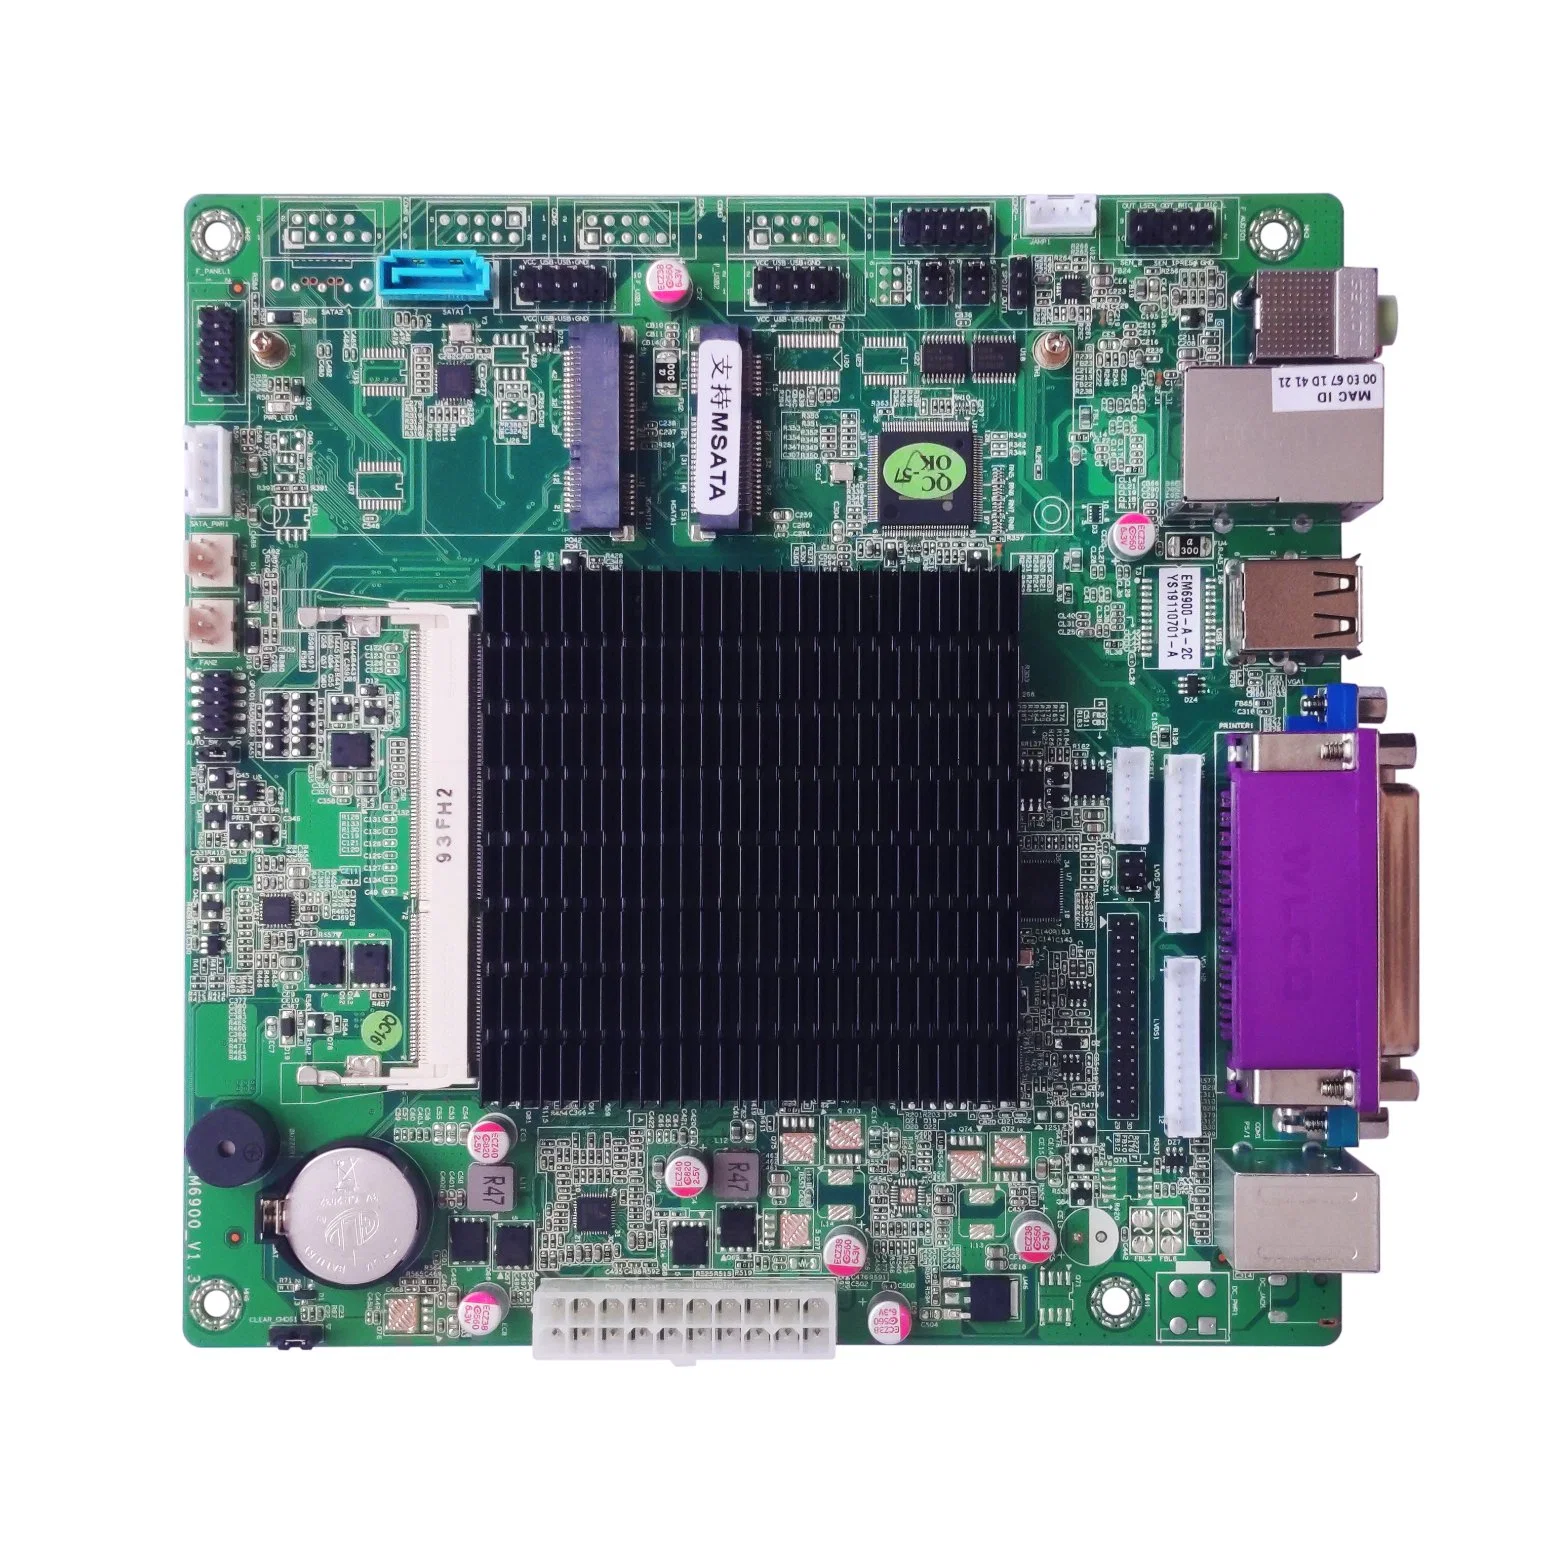 Elsky Em6900 Mini-Itx Motherboard Soc Chip Set J1900 Processors DDR3 Max 8GB RAM SATA3.0 Msat Realtek 8111e 1000m LAN ATX Power